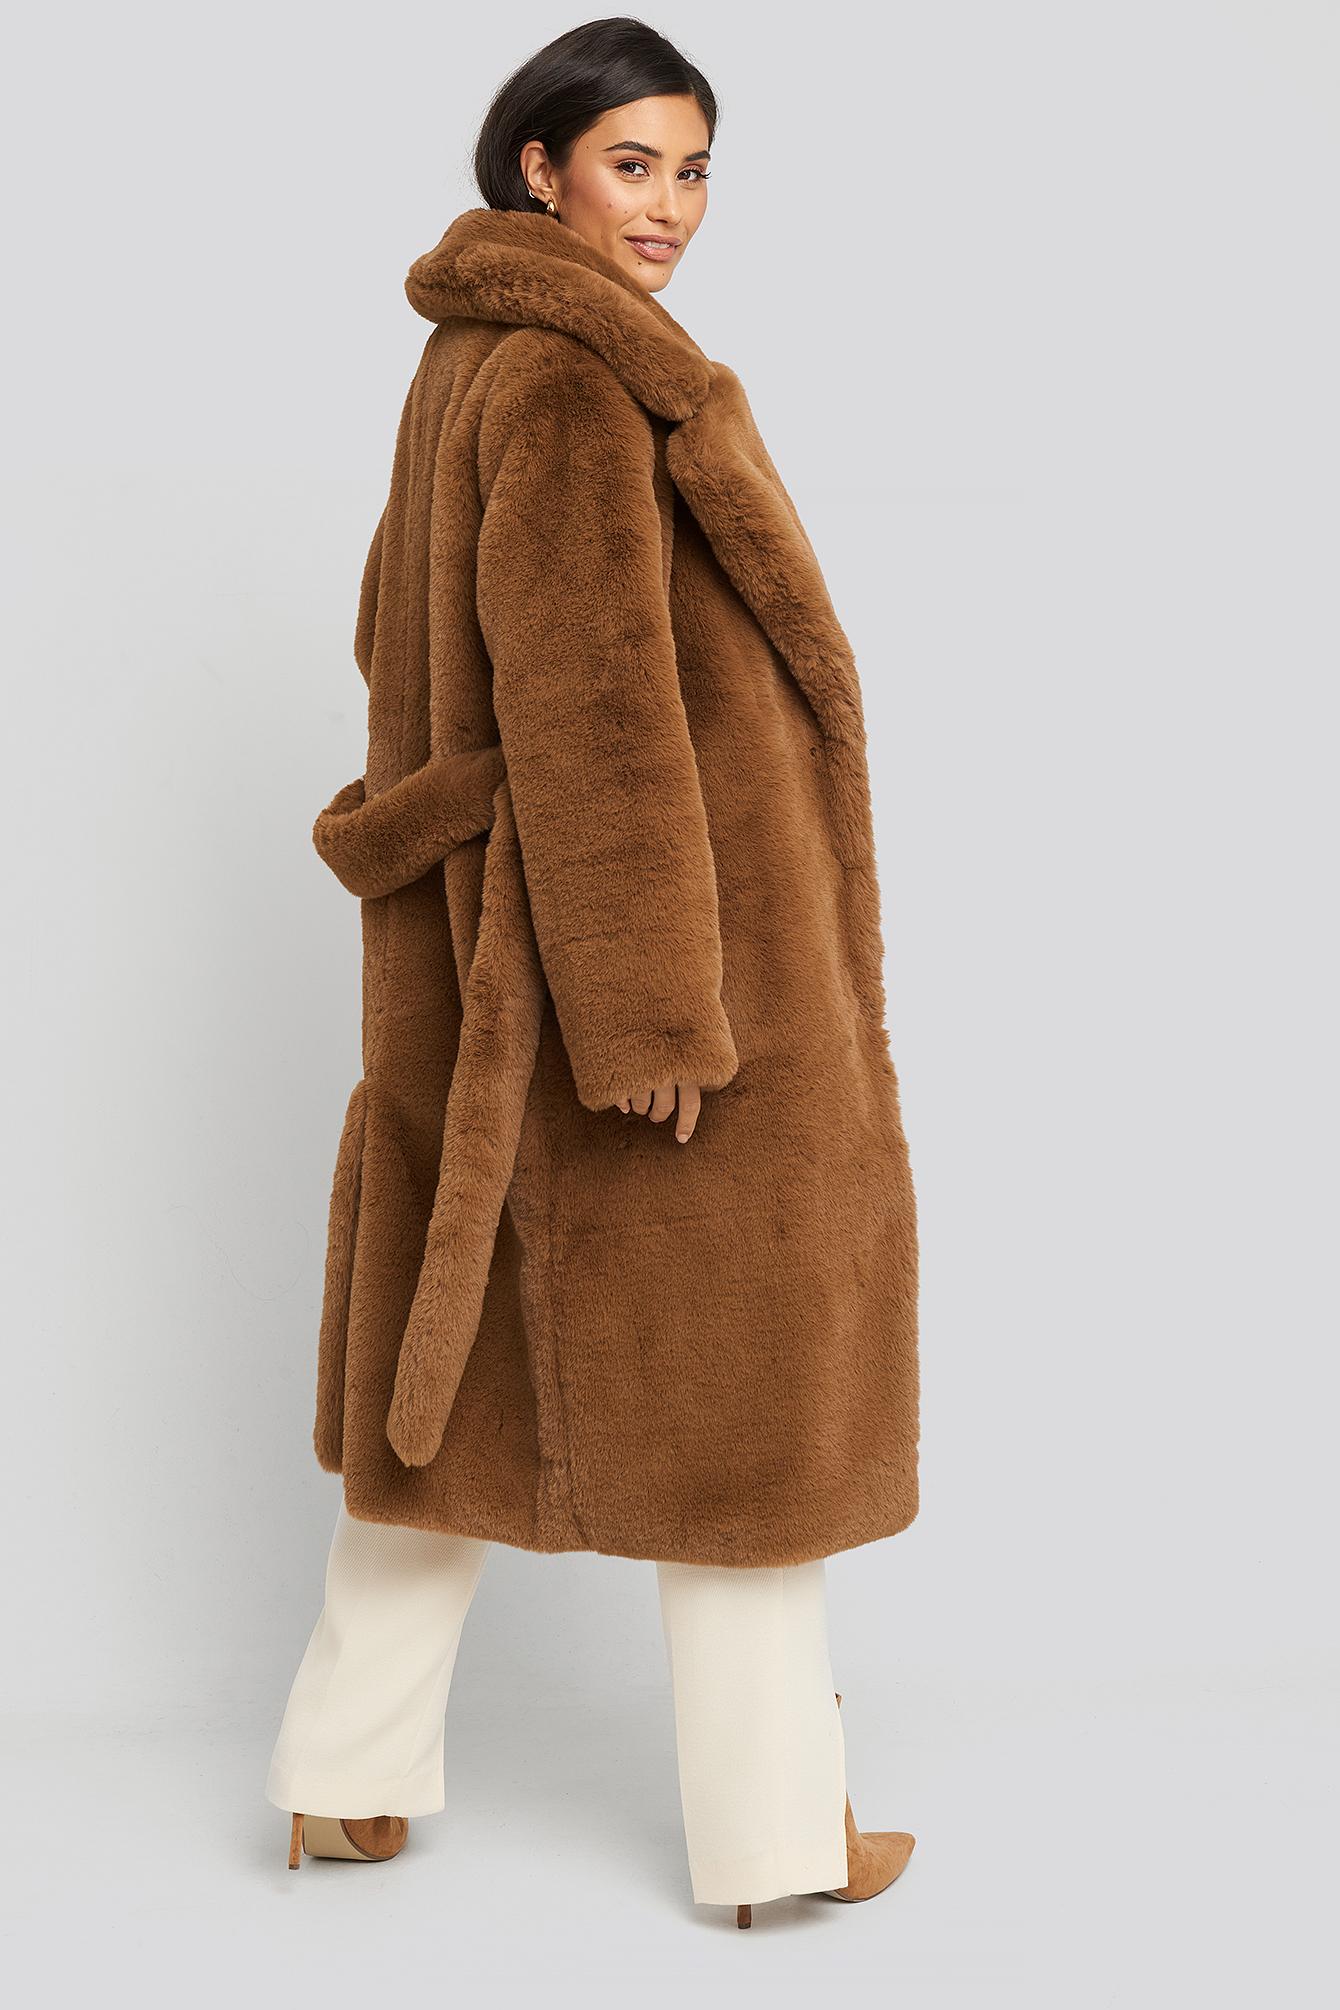 NA-KD Synthetik Dilara x Soft Faux Fur Jacket in Braun Damen Bekleidung Jacken Felljacken 